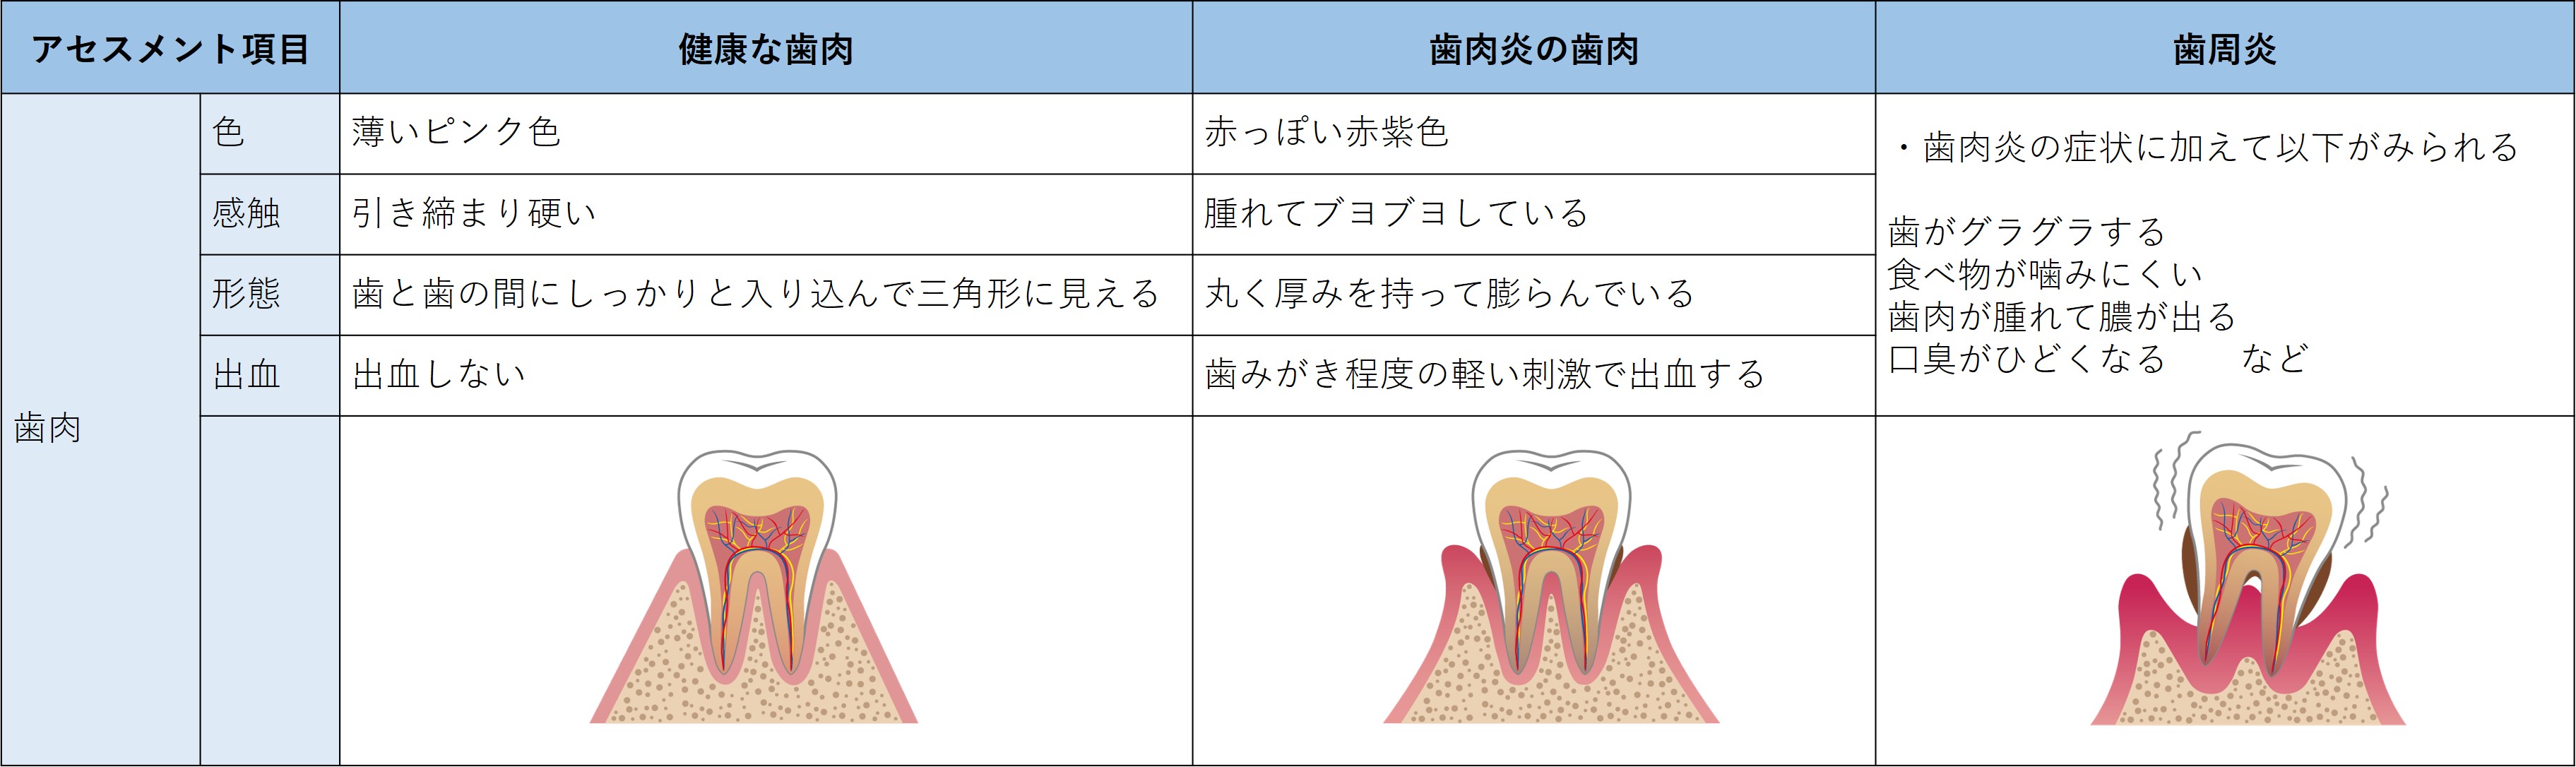 ファイル:表-口-視診4-歯肉の観察.jpg